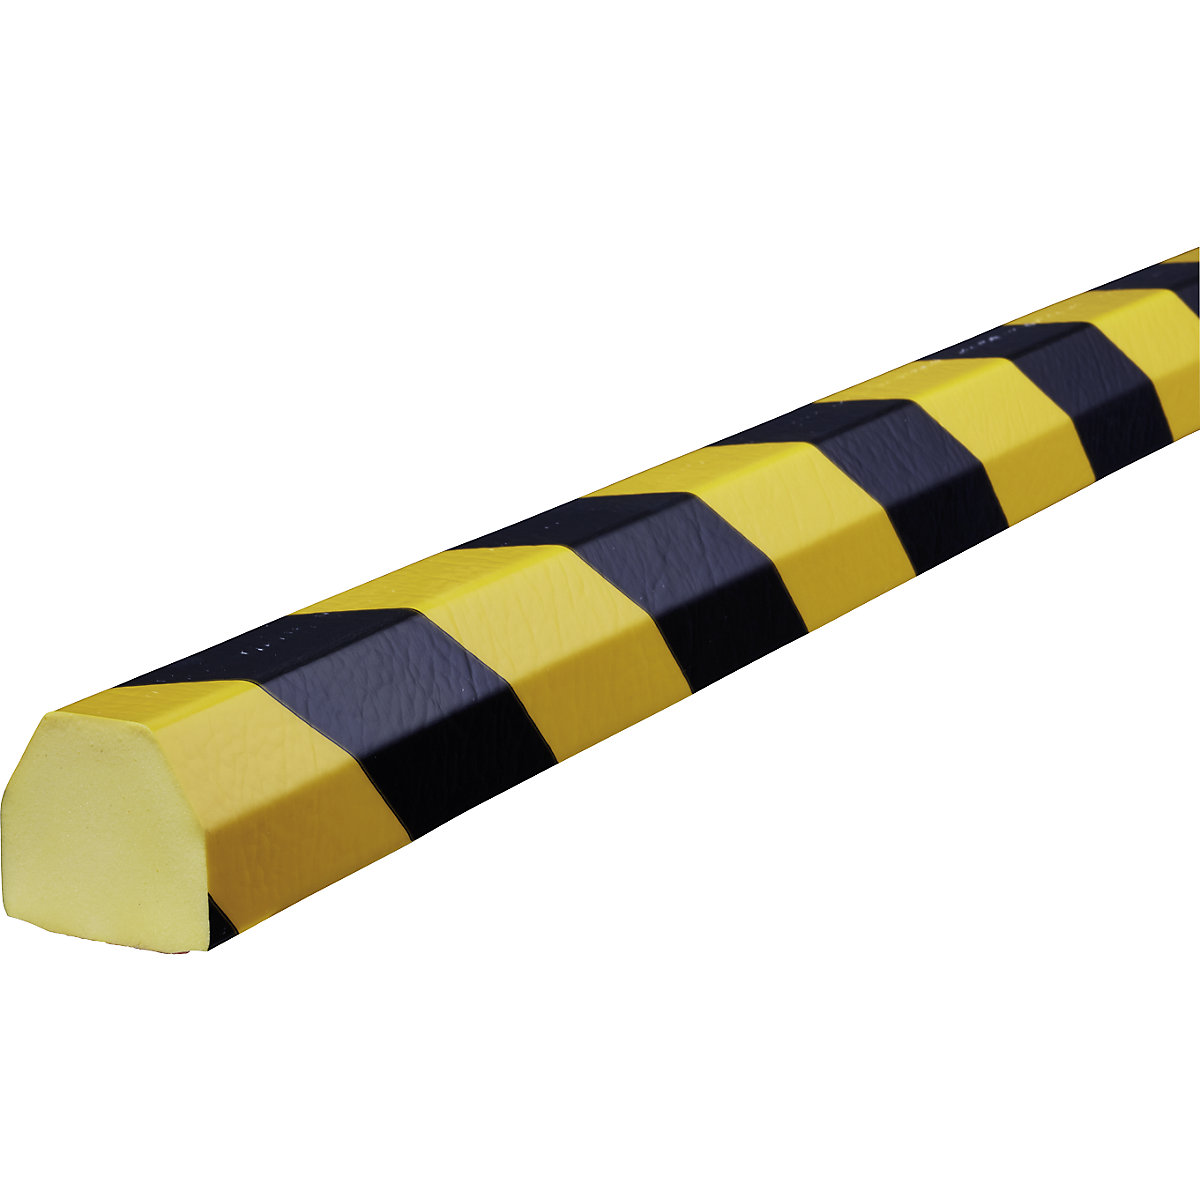 Knuffi® felületvédő – SHG, CC típus, 1 db 5 m-es tekercs, fekete / sárga-20